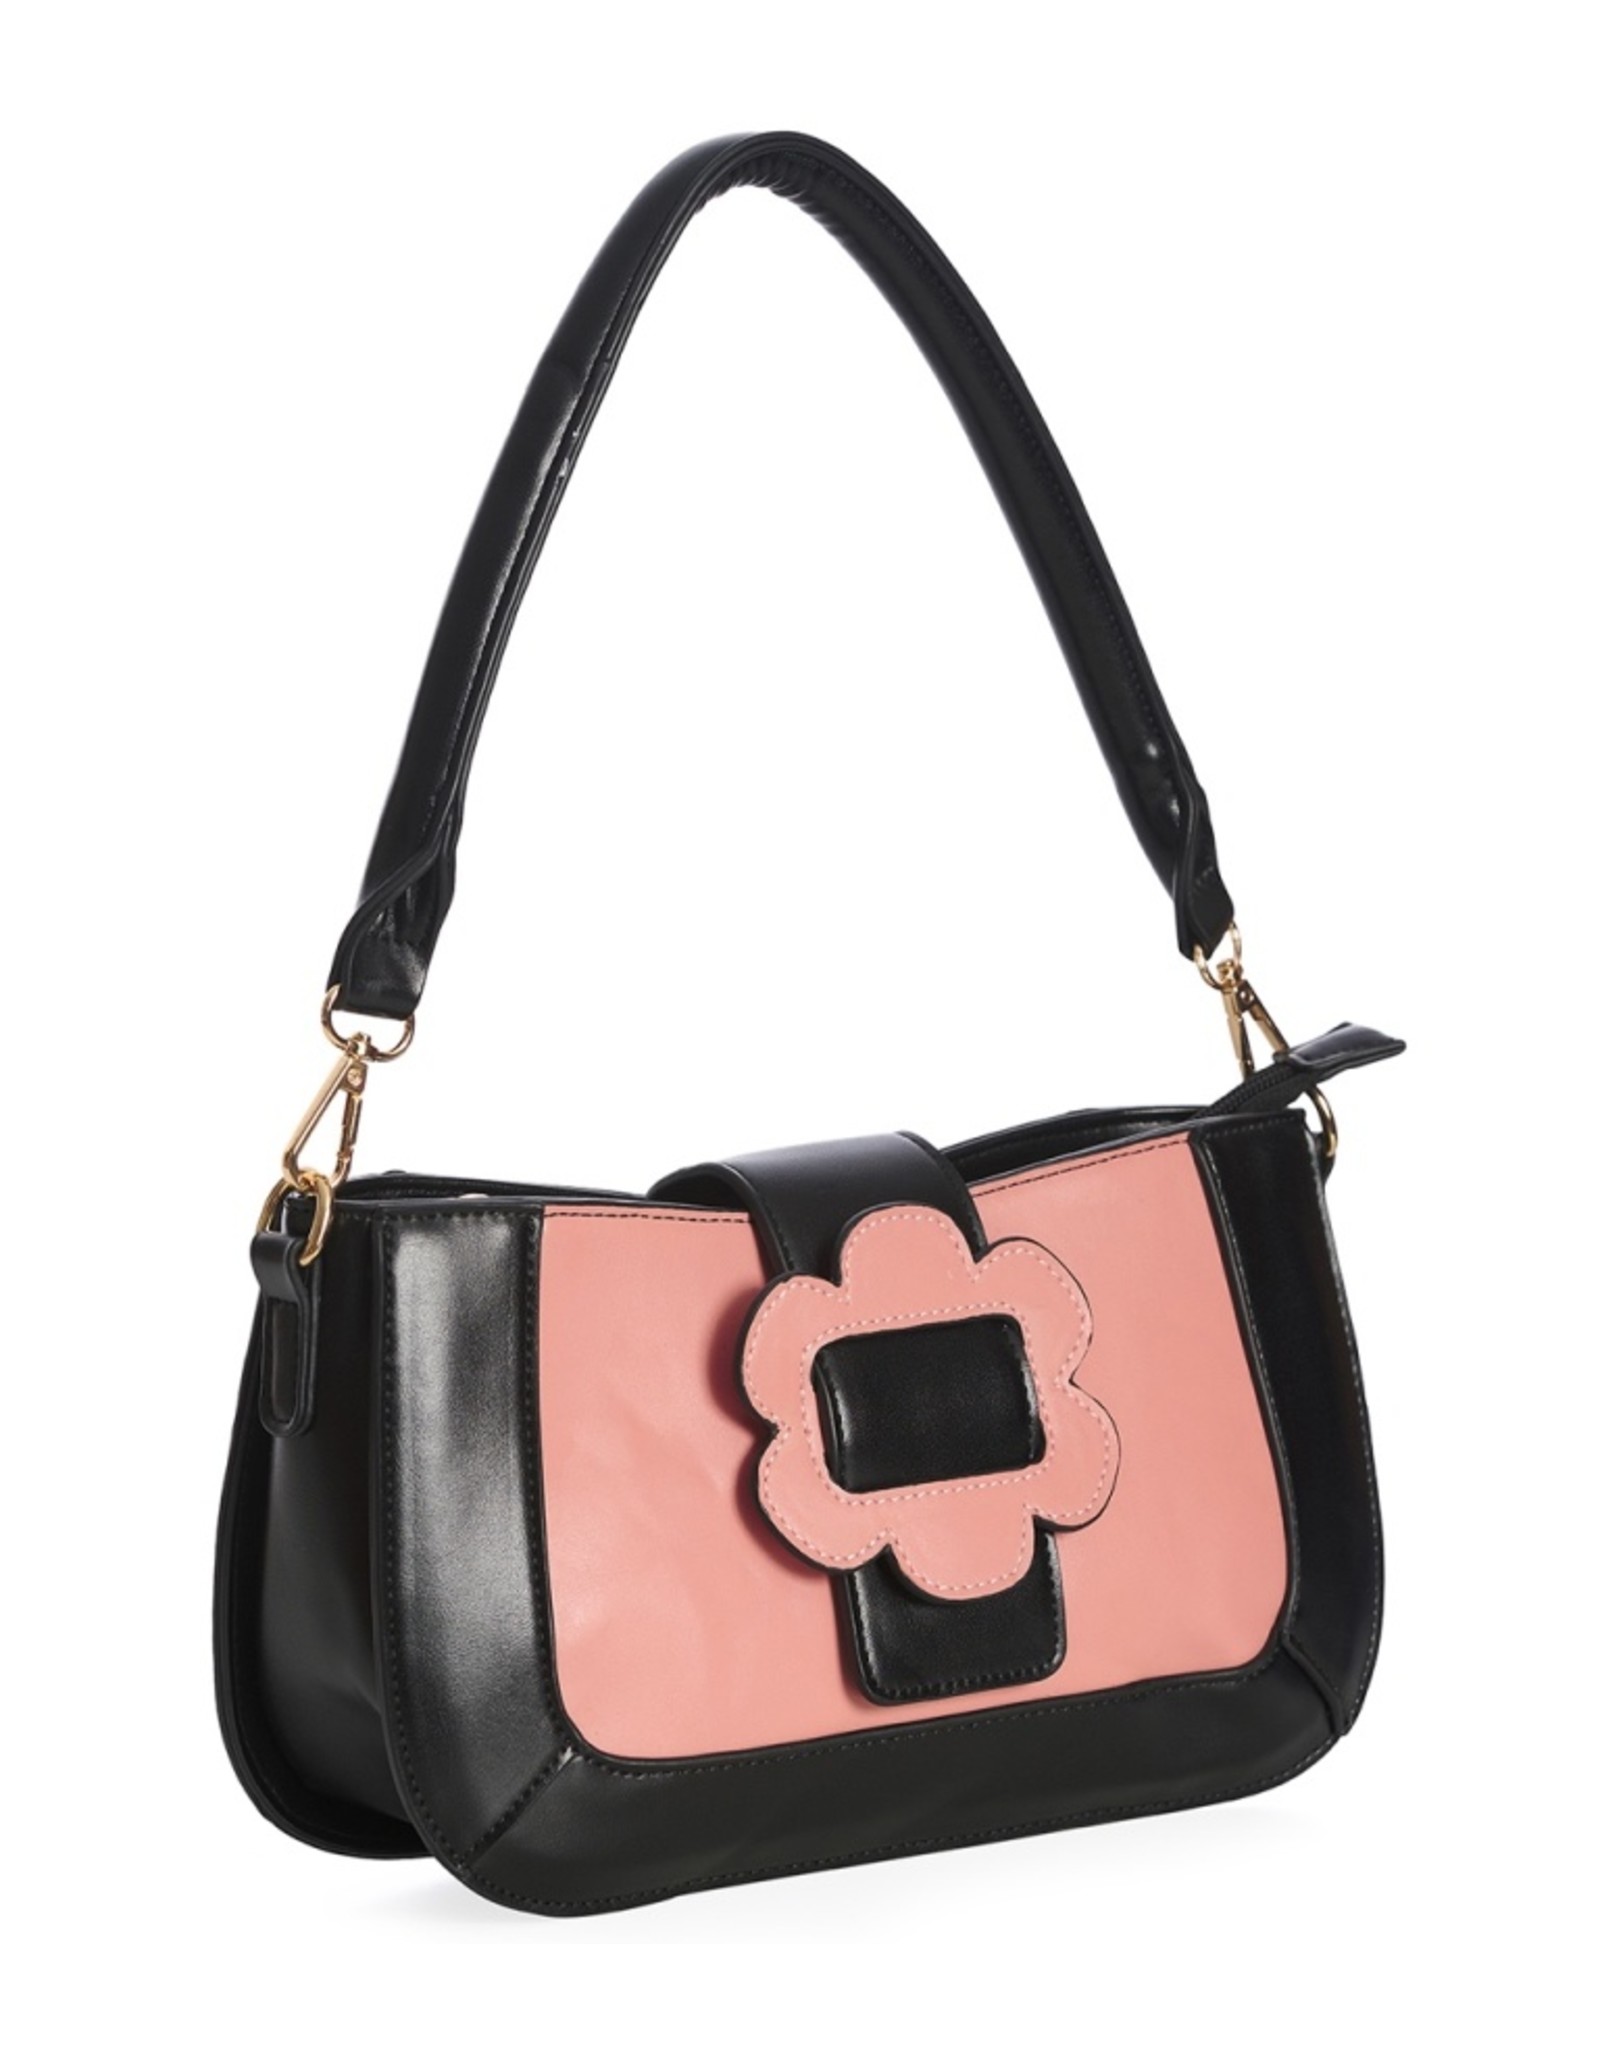 Banned Retro bags  Vintage bags - Evening Primrose 1960's Baguette Bag Old Pink-Black